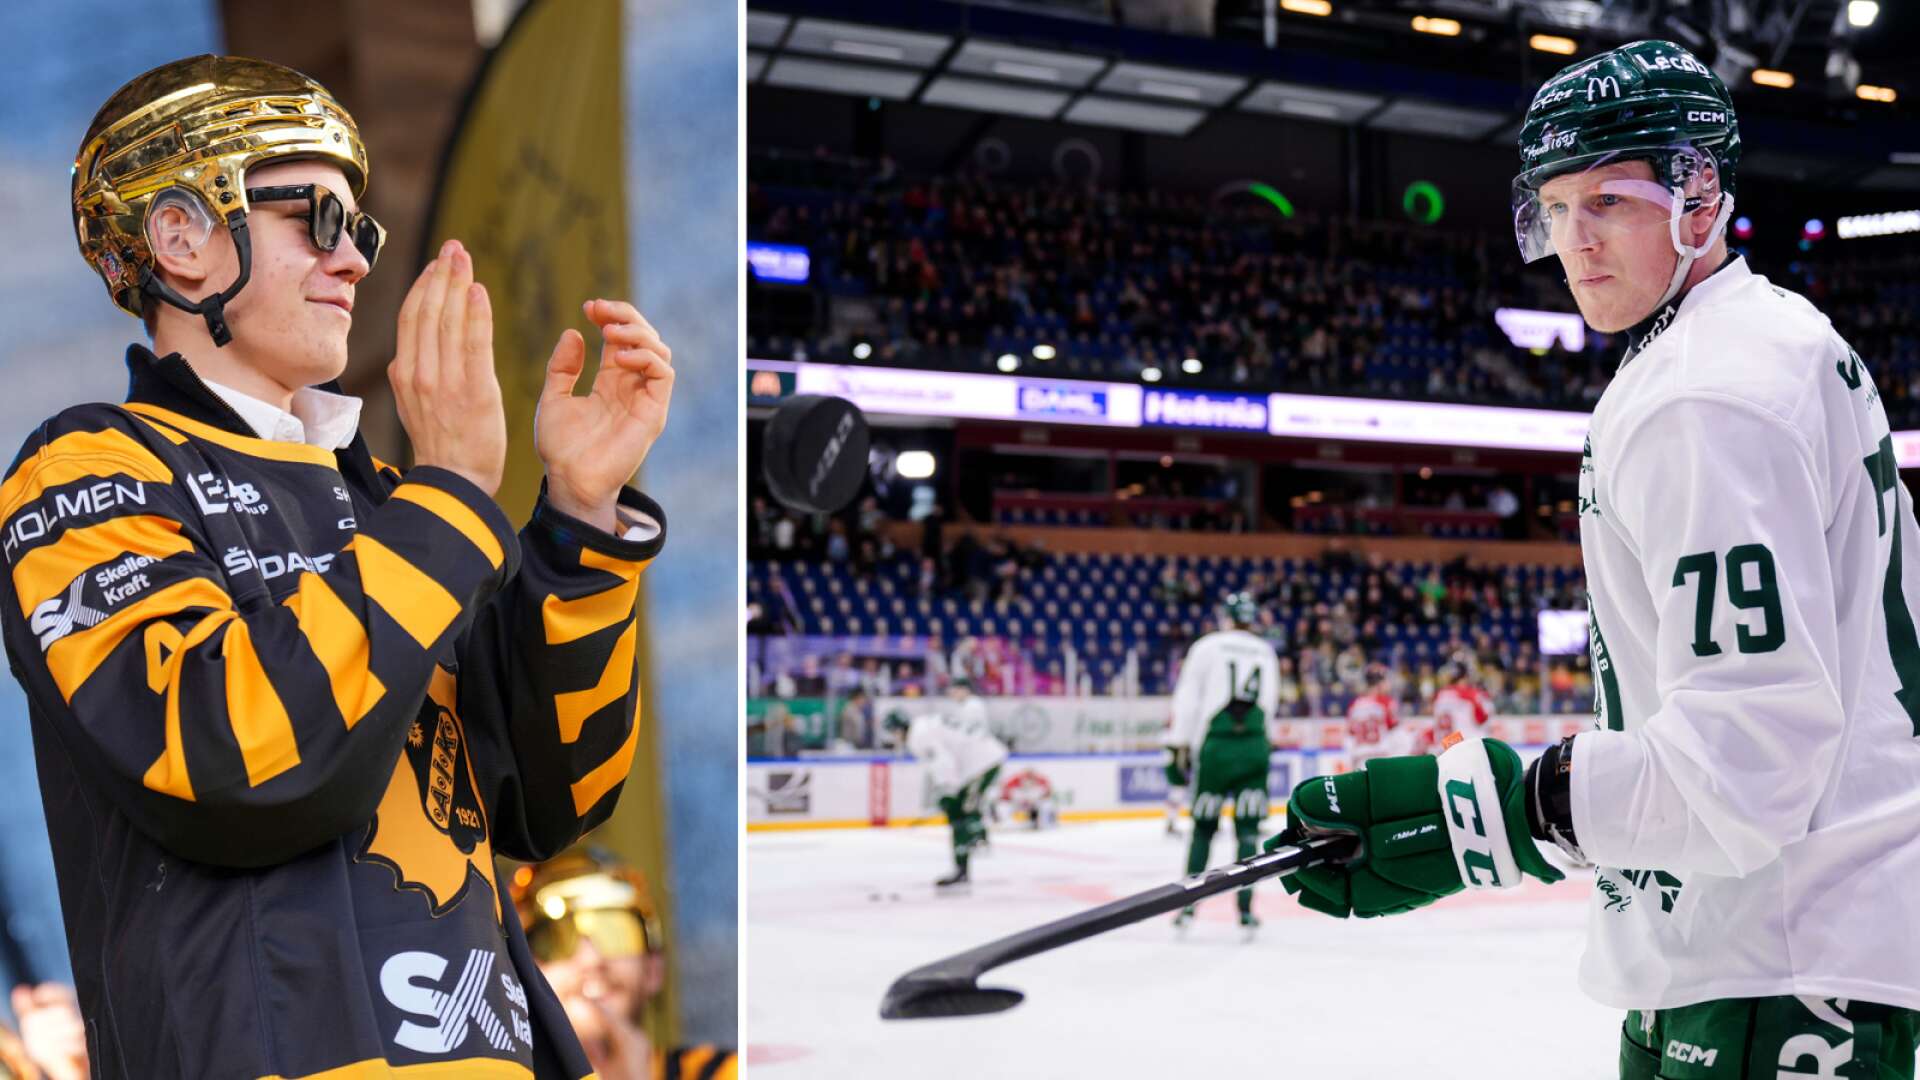 Hockeyallsvenska klubben har tagit kontakt med Färjestads dubbla guldhjälte – som fortfarande har svårt att smälta beskedet: ”Det är en process”